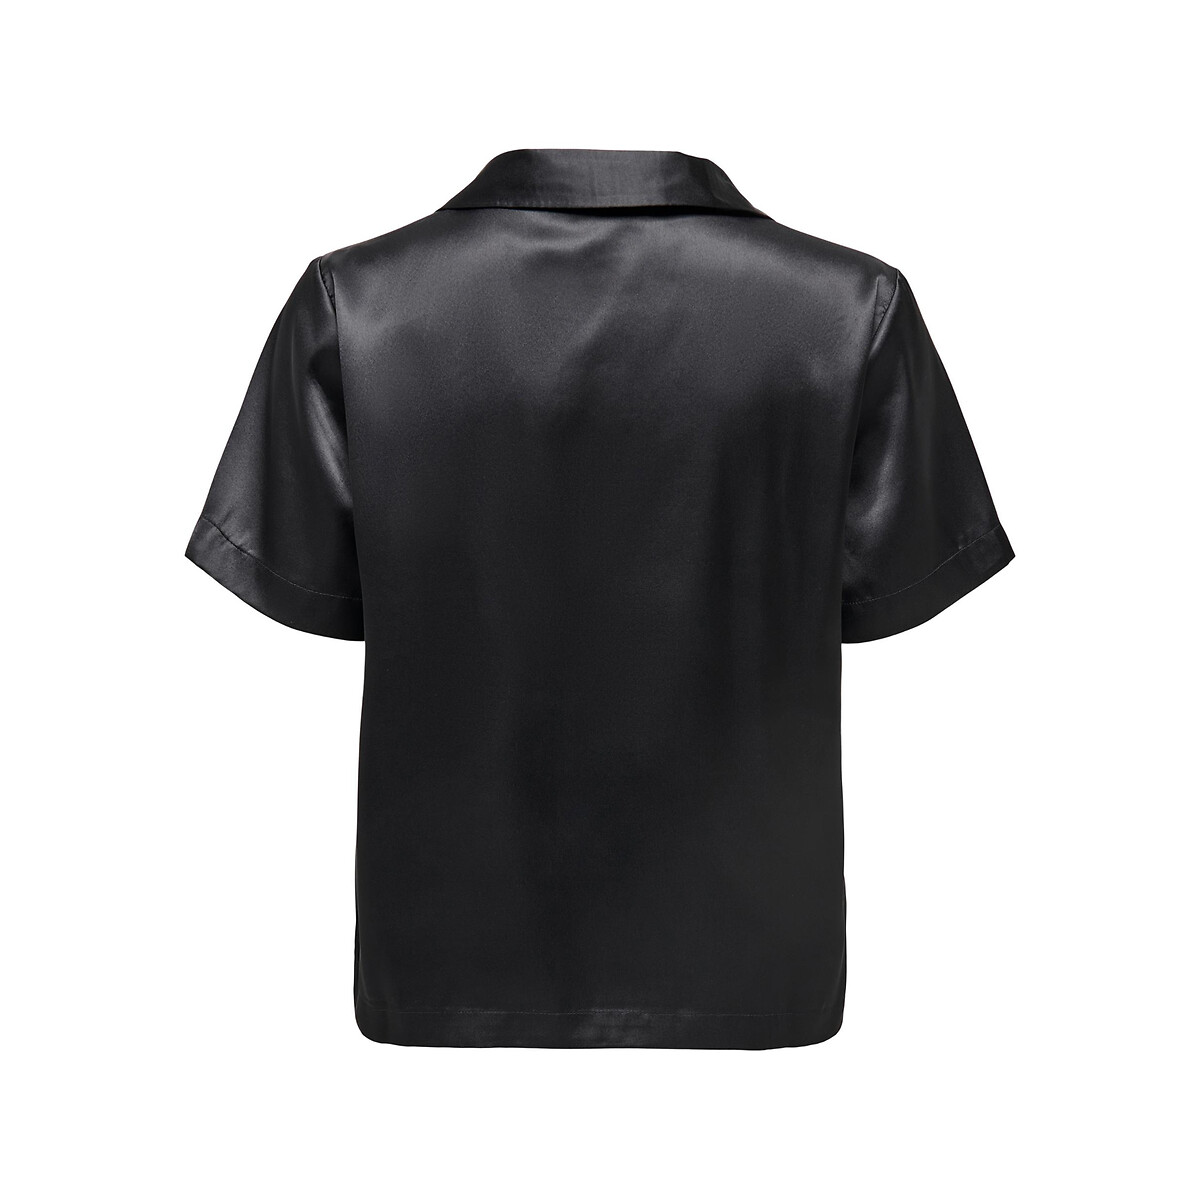 Блузка Из сатина короткие рукава XL черный LaRedoute, размер XL - фото 3